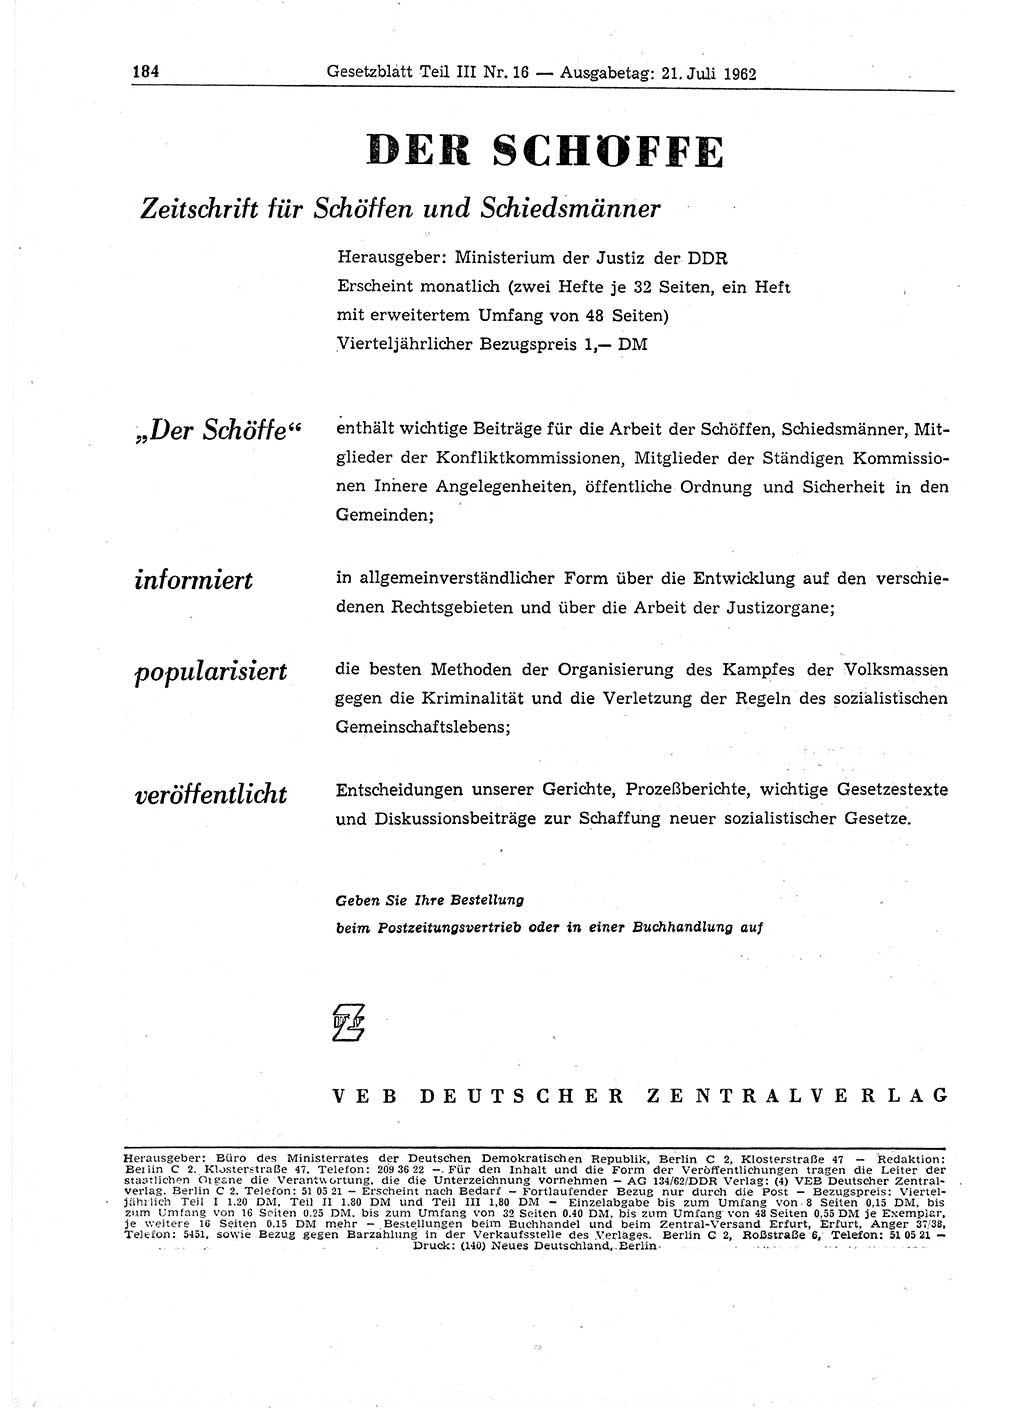 Gesetzblatt (GBl.) der Deutschen Demokratischen Republik (DDR) Teil ⅠⅠⅠ 1962, Seite 184 (GBl. DDR ⅠⅠⅠ 1962, S. 184)